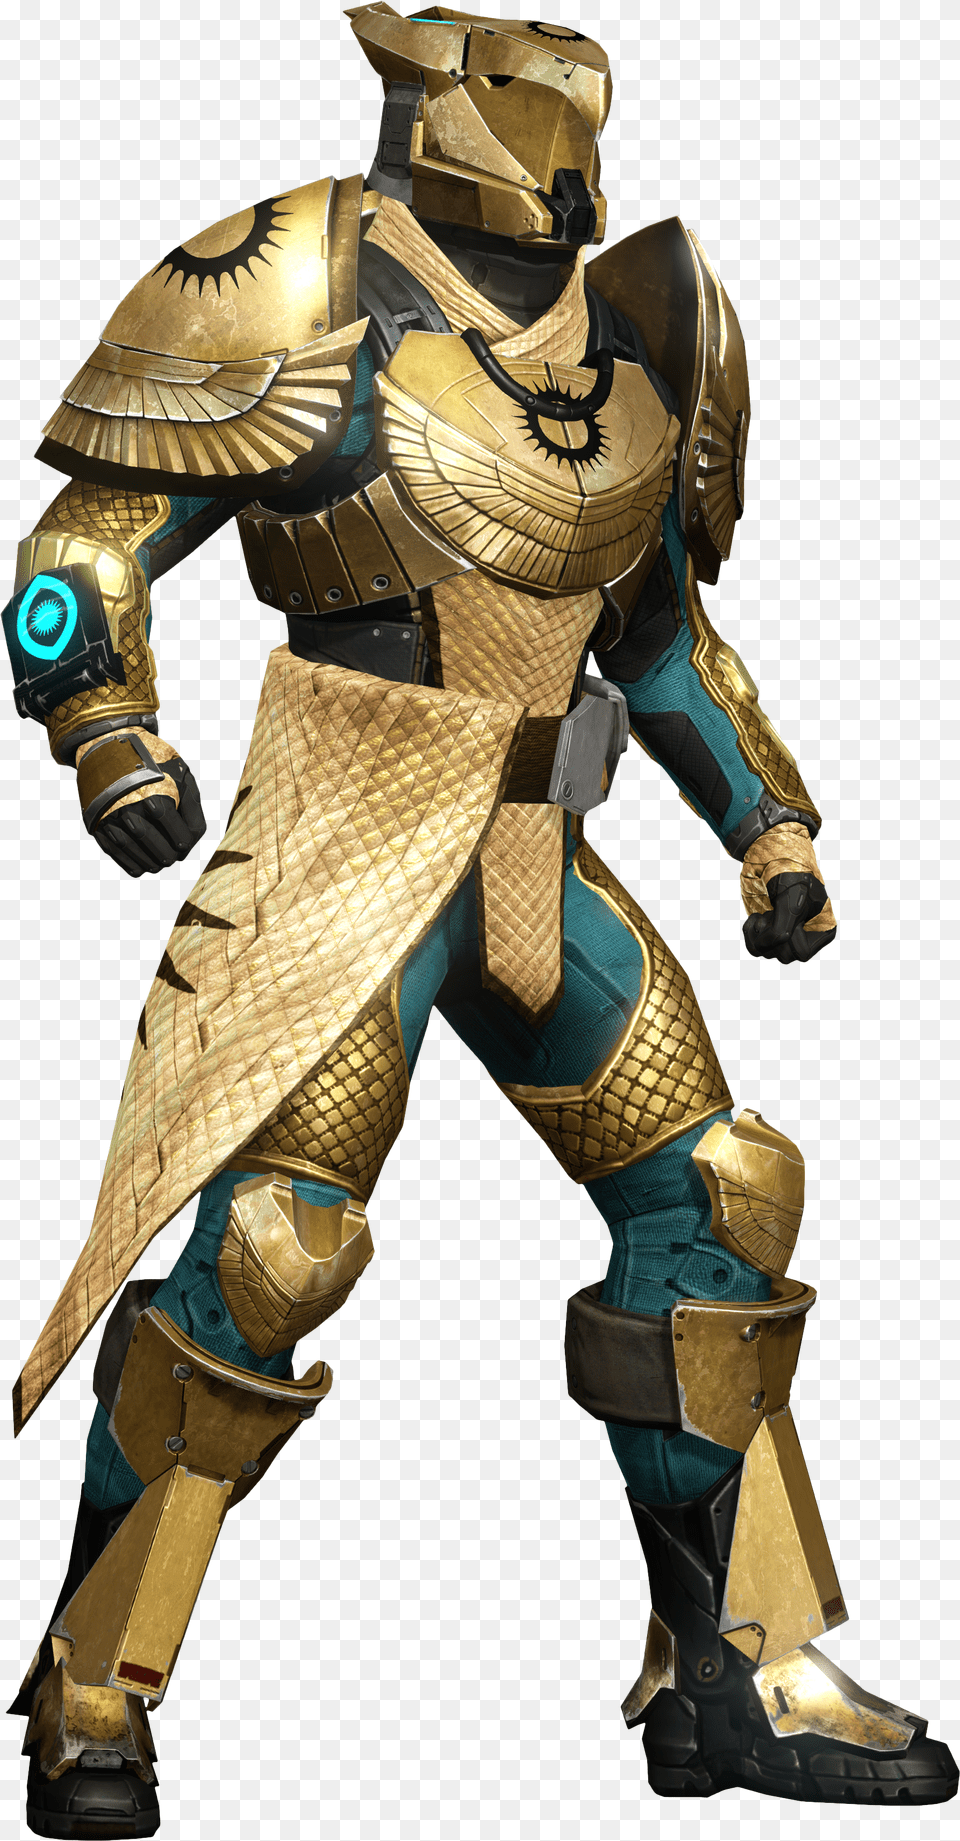 Destiny 1 Trials Of Osiris Titan Armor Destiny 1 Trials Armor Free Transparent Png